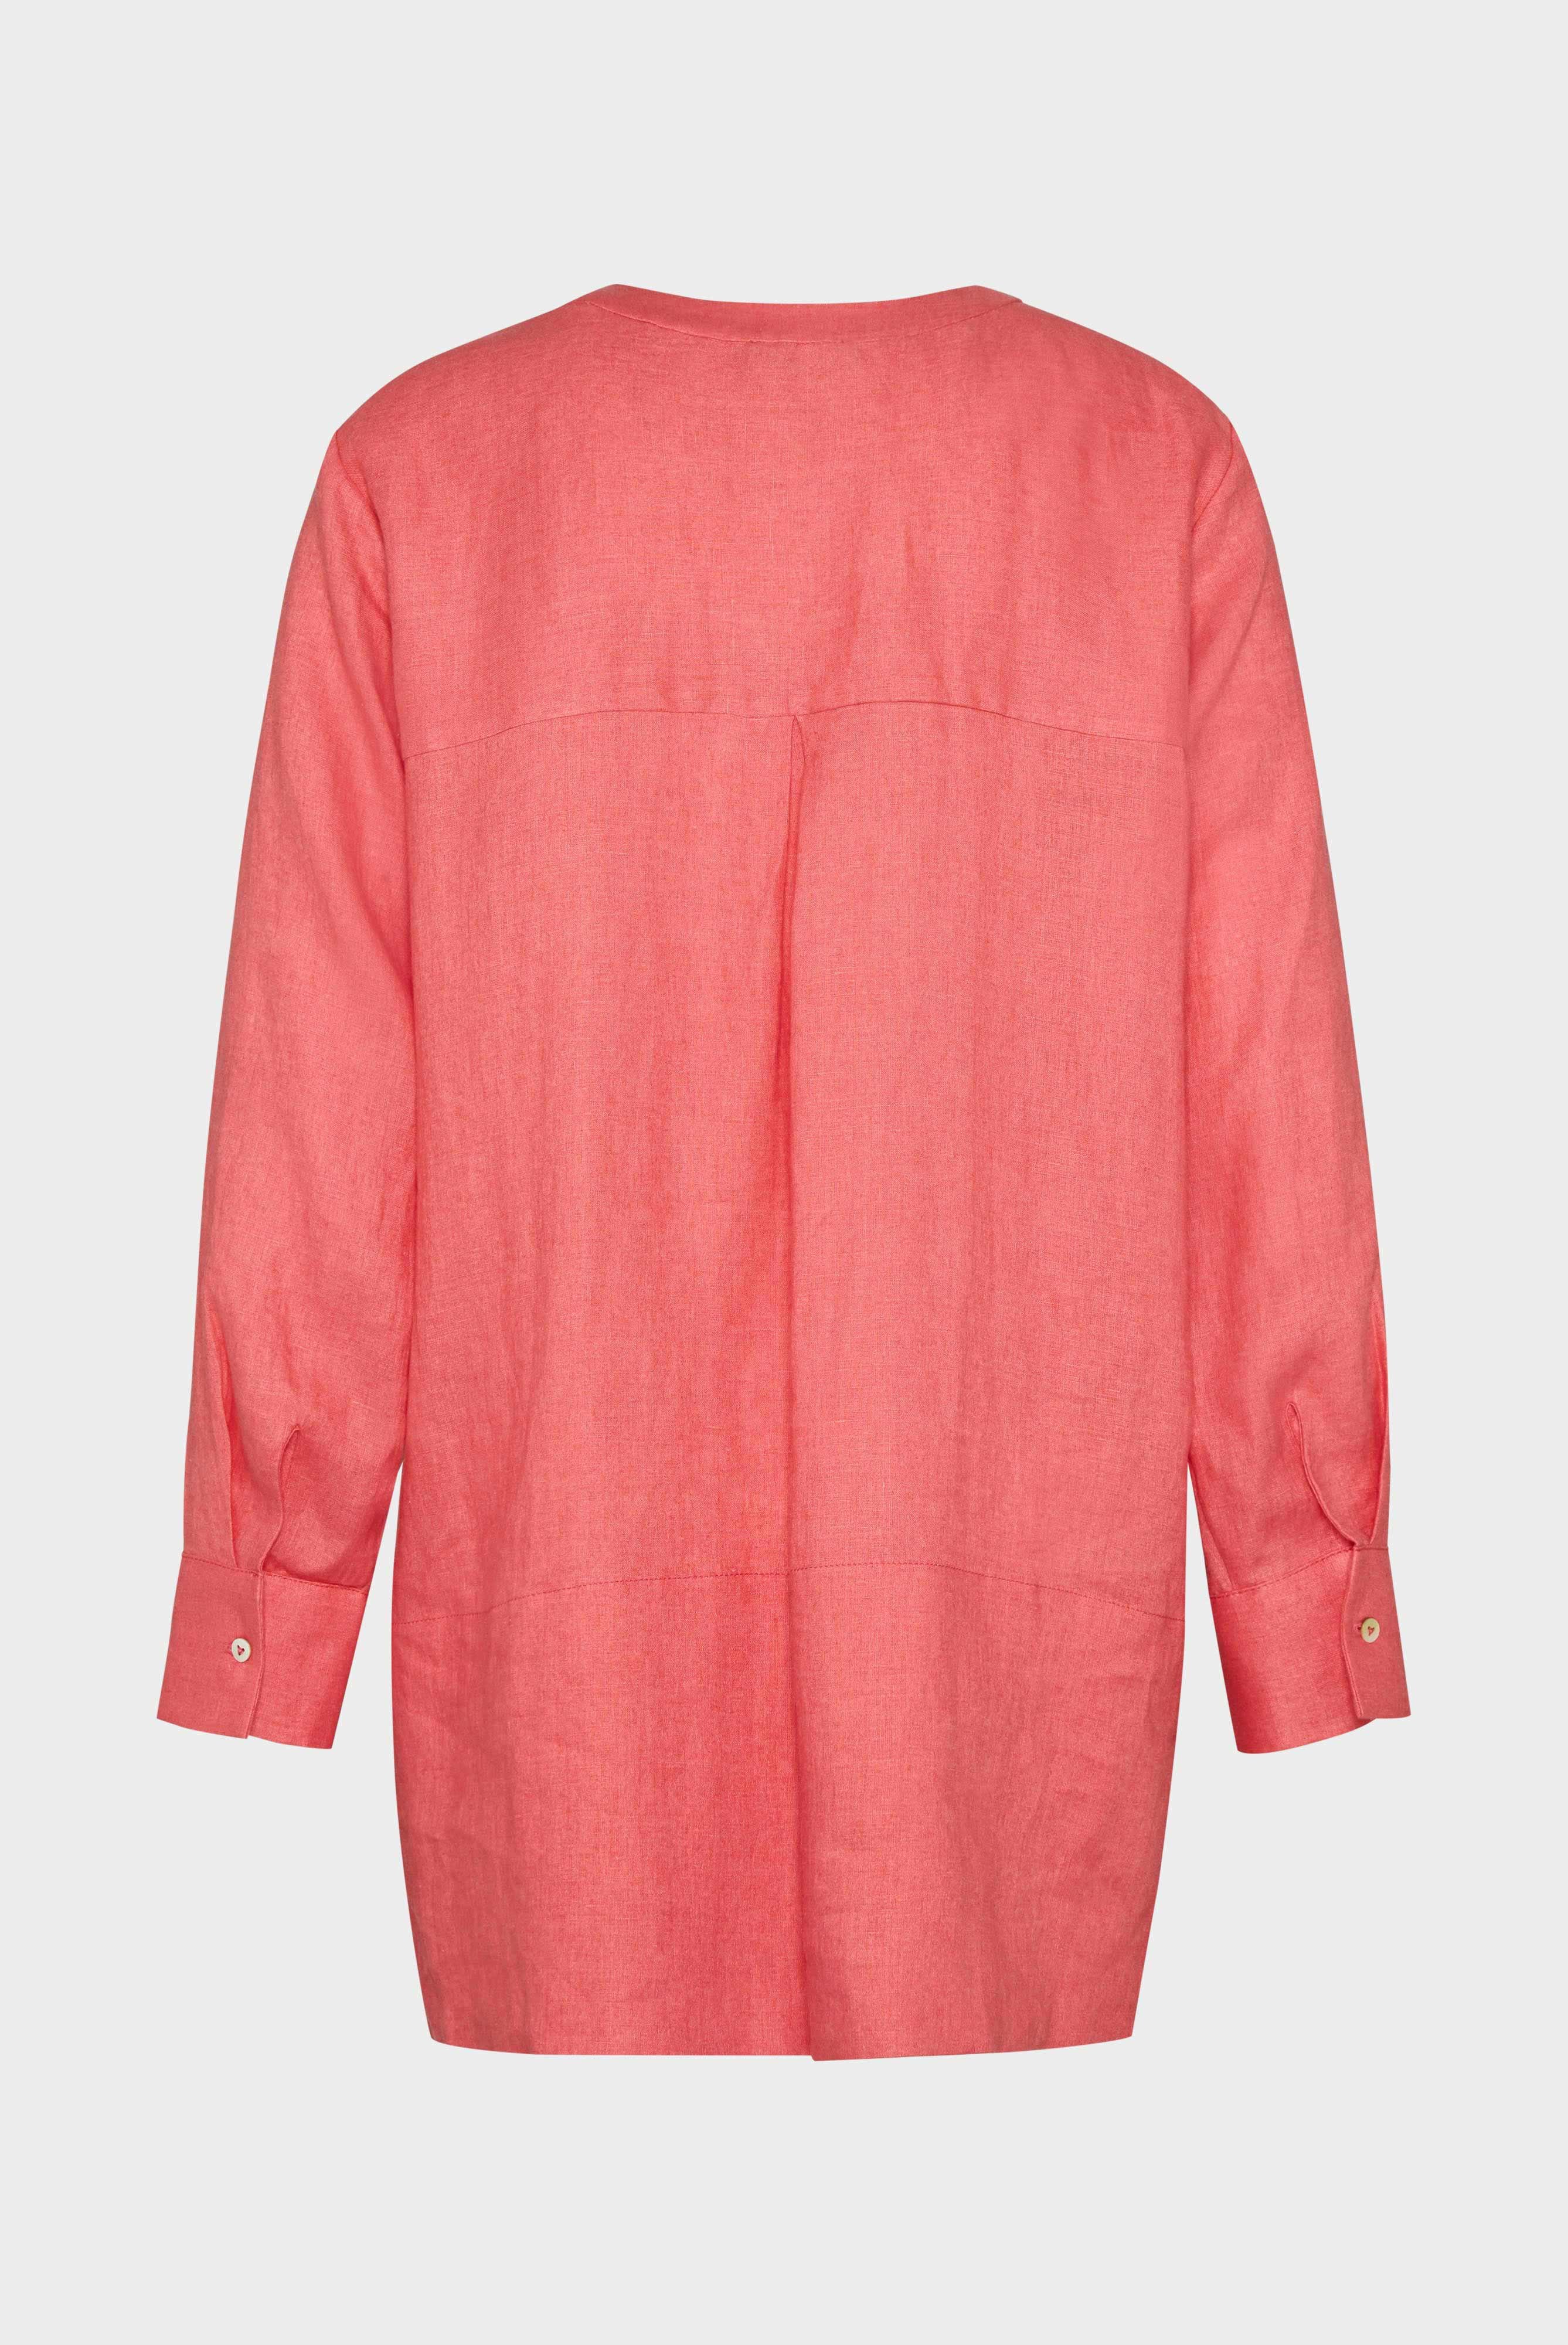 Casual Blouses+Linen tunic blouse+05.526H.P8.150555.440.34